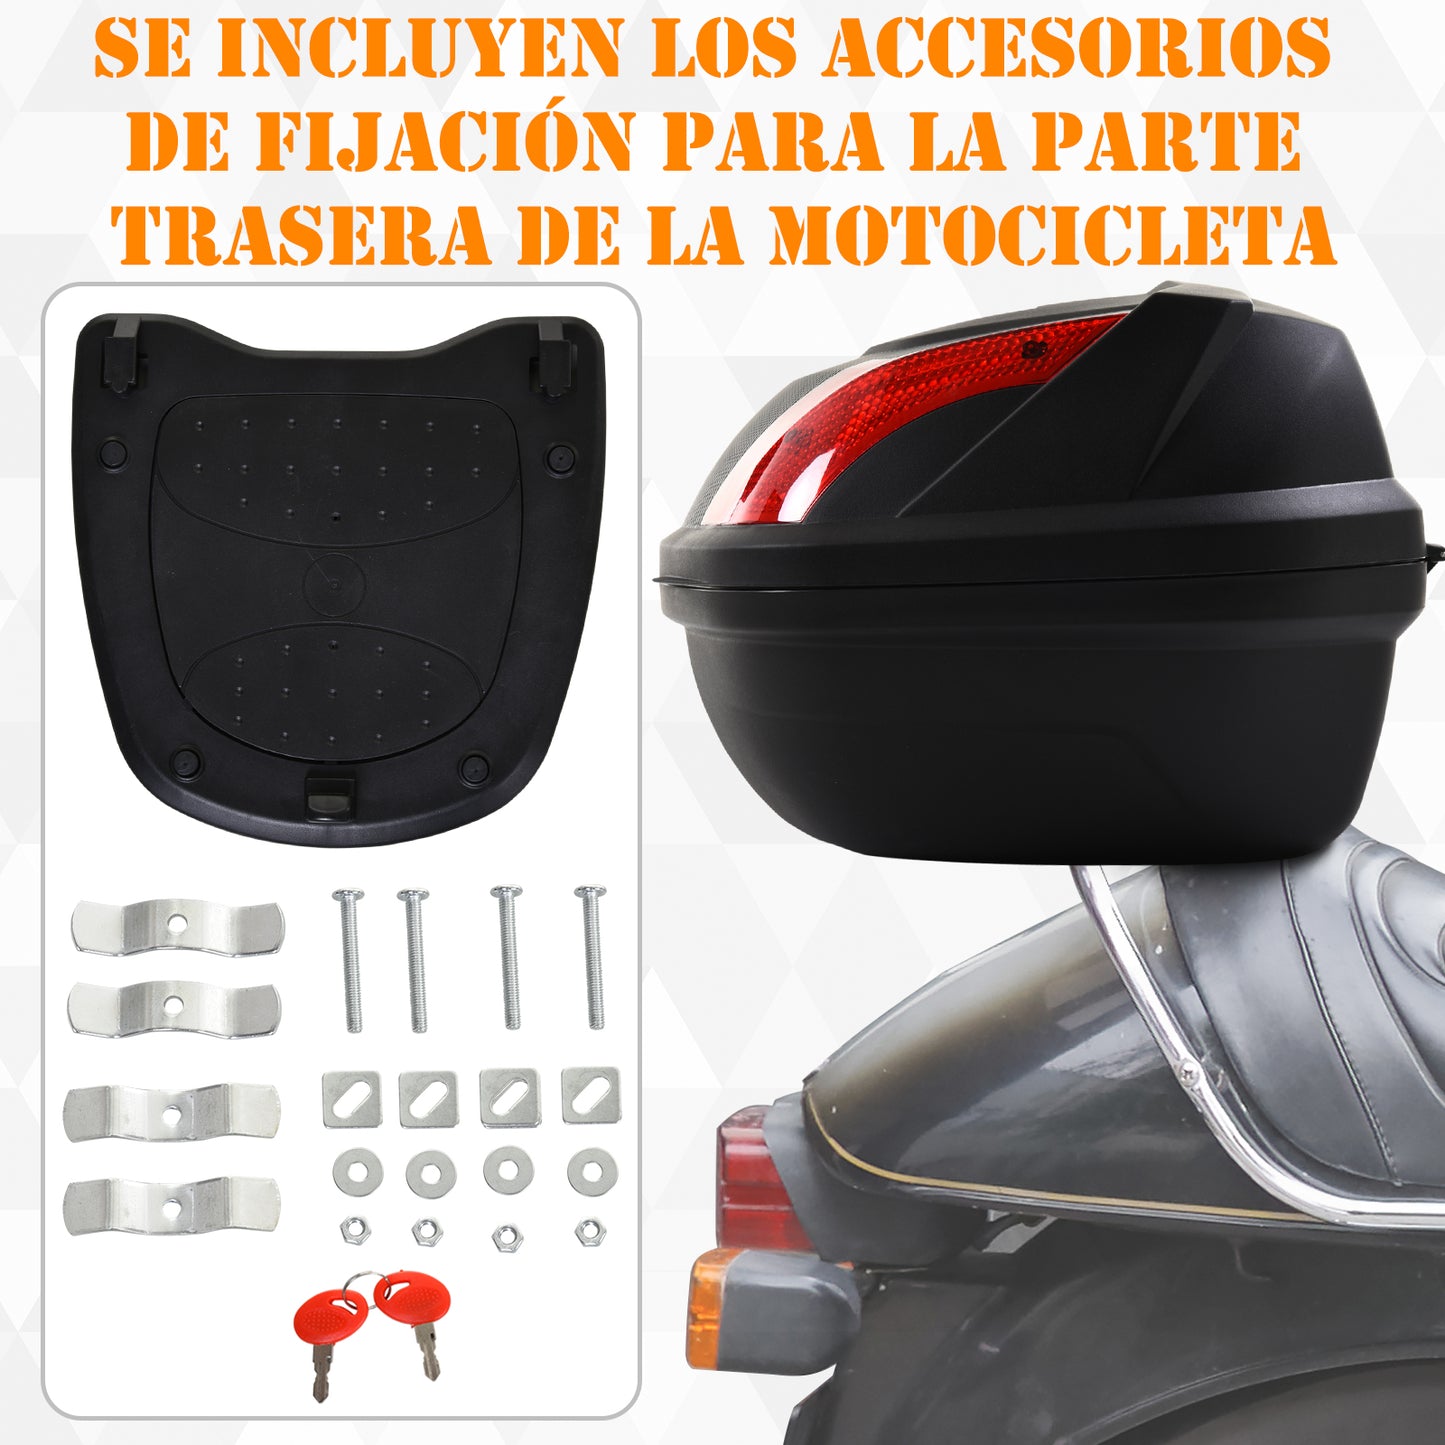 HOMCOM Baúl de Moto Maletero para 1 Casco Integral y 1 Medio Capacidad de 48L Fibra de Carbón Cerradura con 2 Llaves Accesorios 58x44,5x33,5 cm Negro